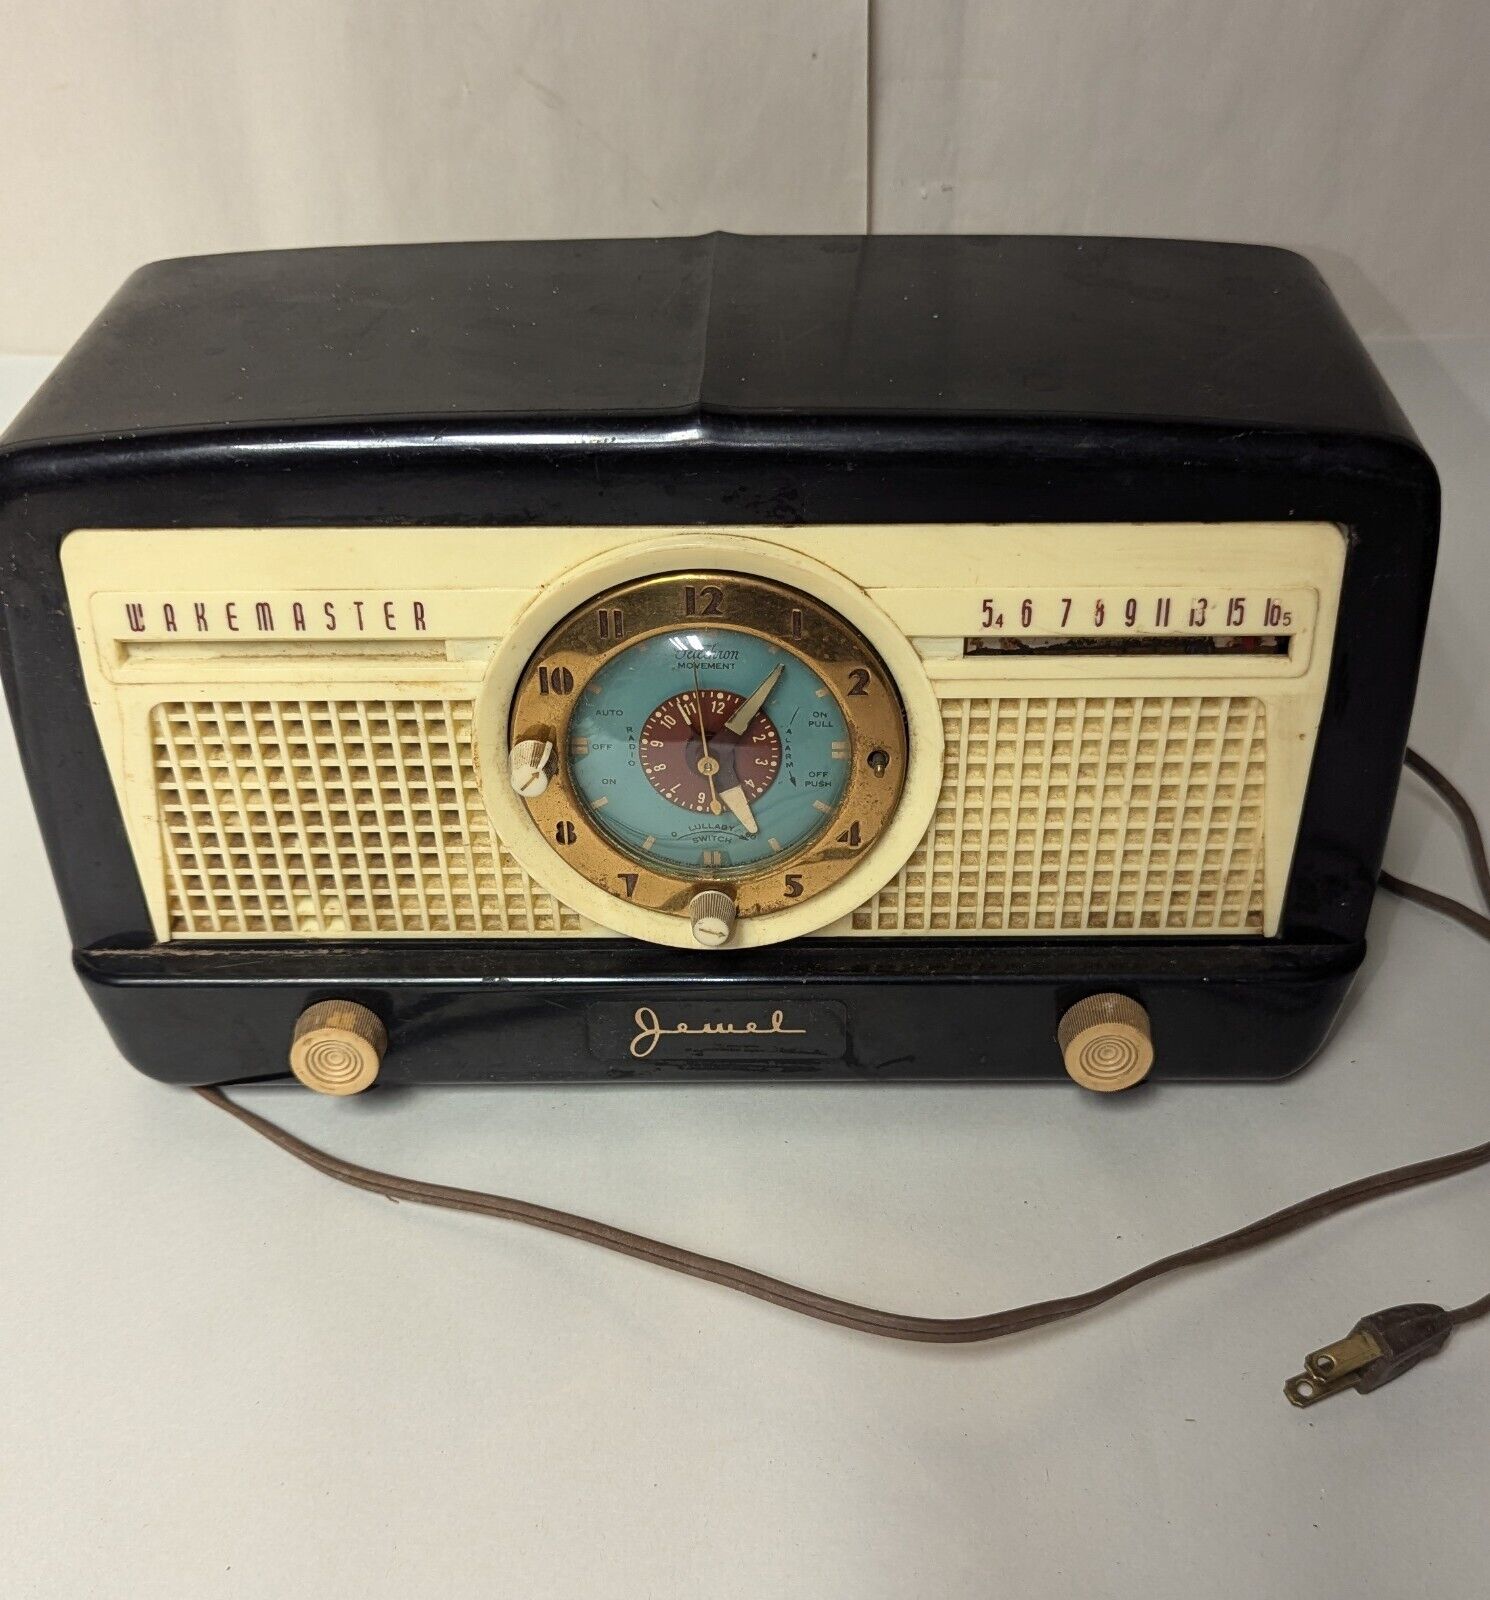 Vintage 1950's Jewel Wakemaster Clock Radio Model 5057U UNTESTED READ P